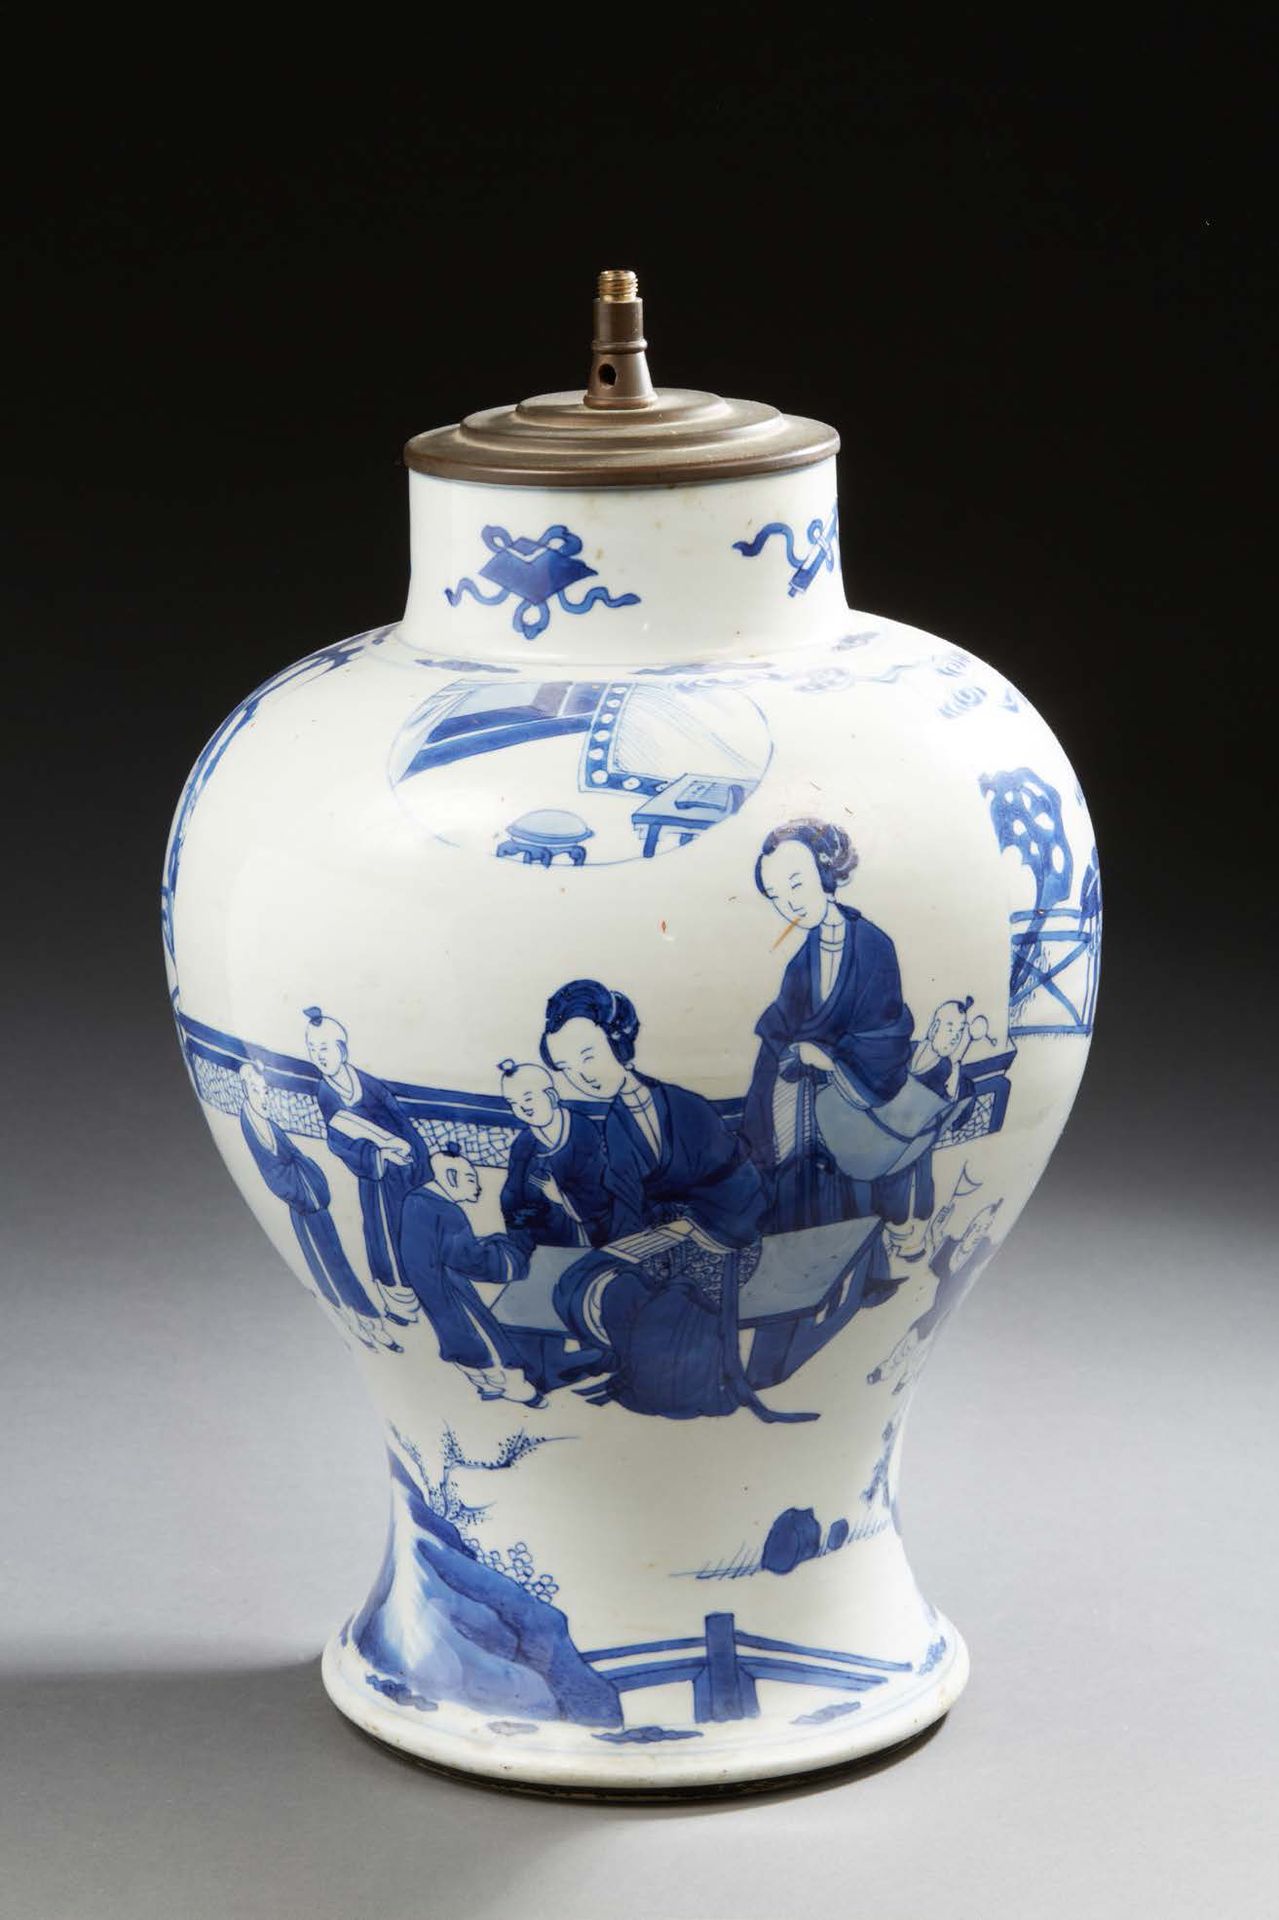 CHINE 美丽的瓷器花瓶，以蓝色釉下彩装饰妇女和儿童在花园中玩耍，亭子附近有穿孔岩石、障碍物和香蕉树。颈部的珍贵道教物品。
康熙年间（1662-1722）。
&hellip;